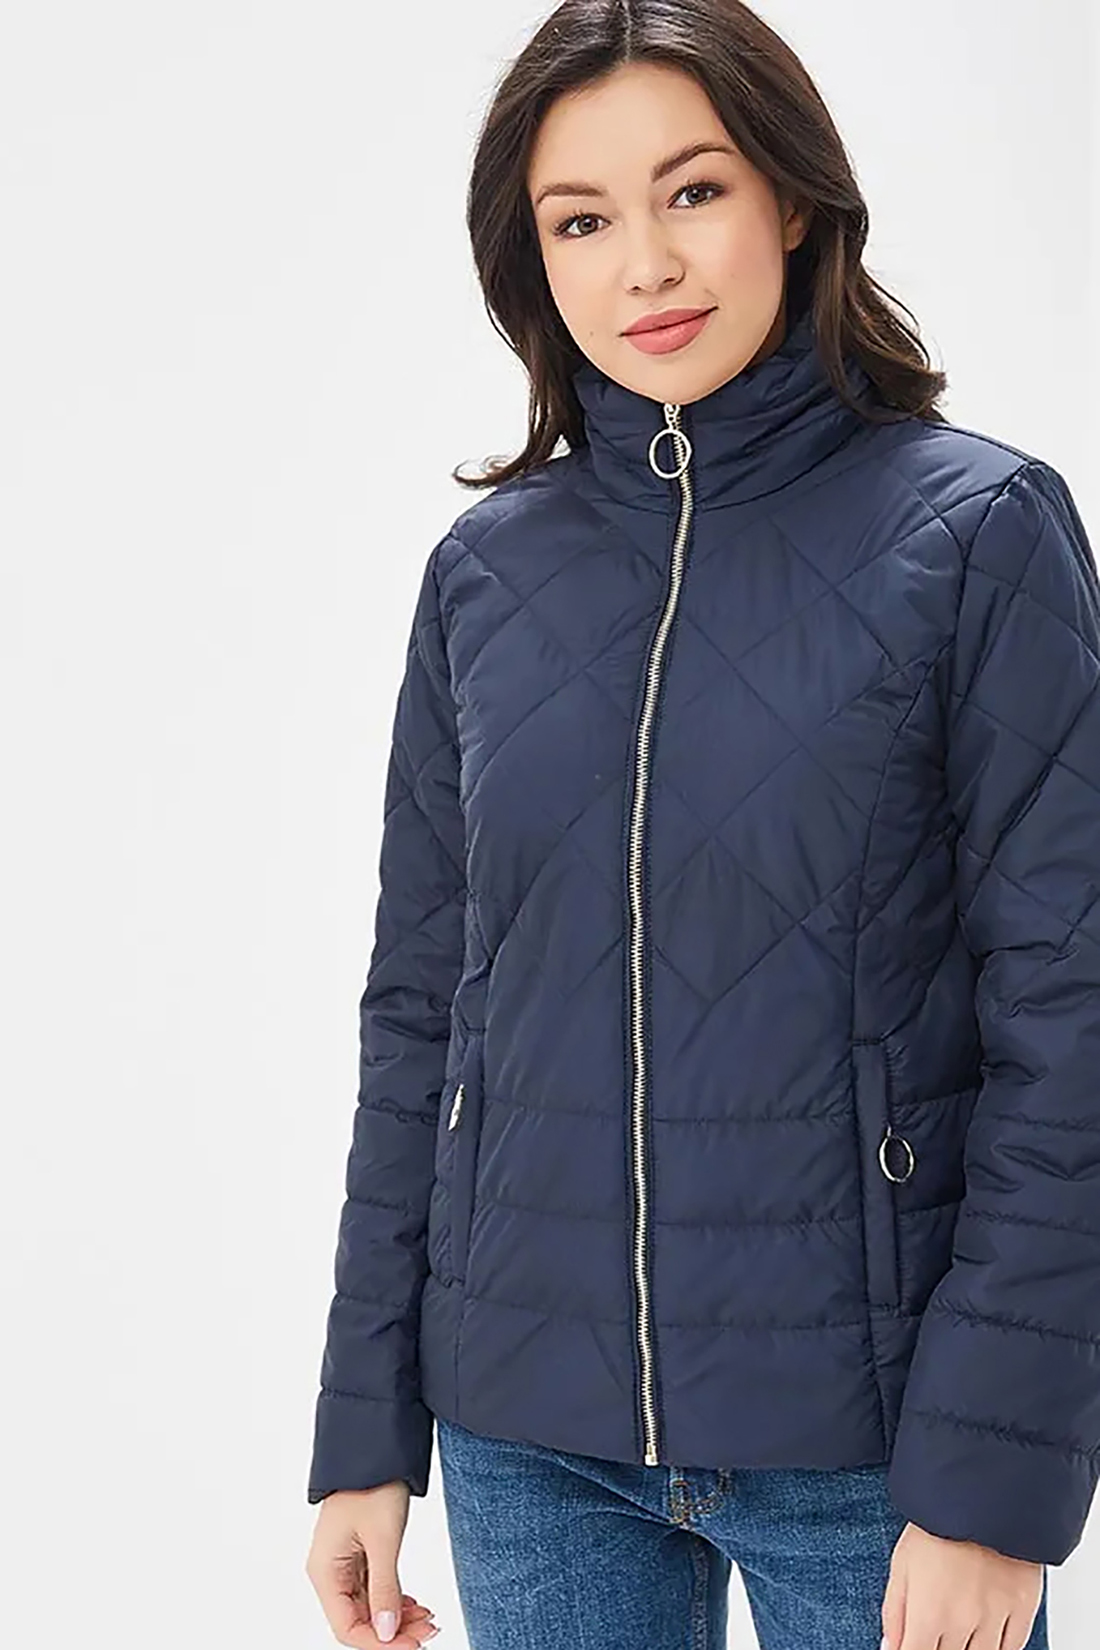 Стёганая куртка с крупной фурнитурой (арт. baon B039015), размер L, цвет синий Стёганая куртка с крупной фурнитурой (арт. baon B039015) - фото 1